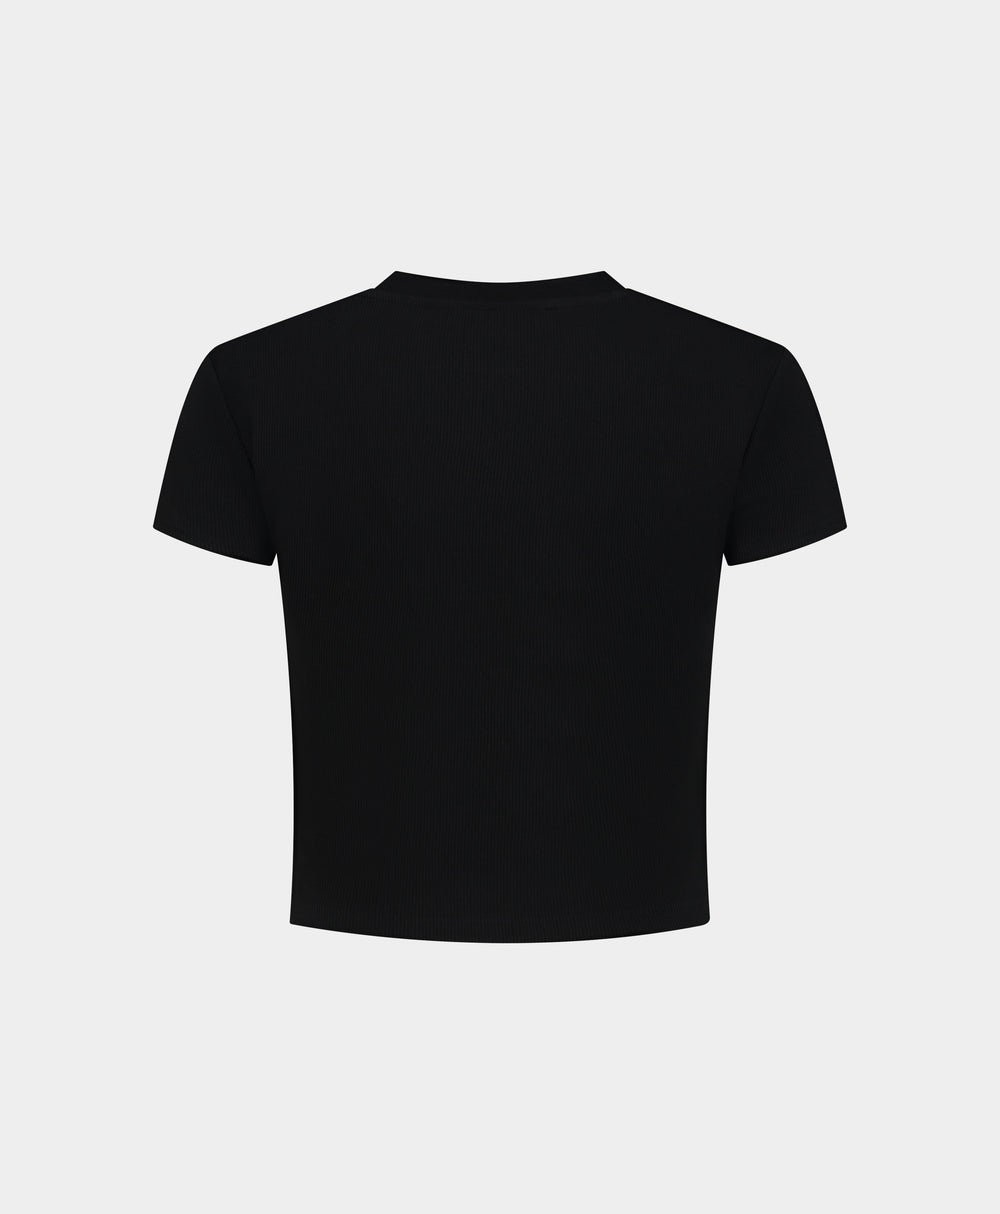 DP - Black Logotype Cropped T-Shirt - Packshot - Rear